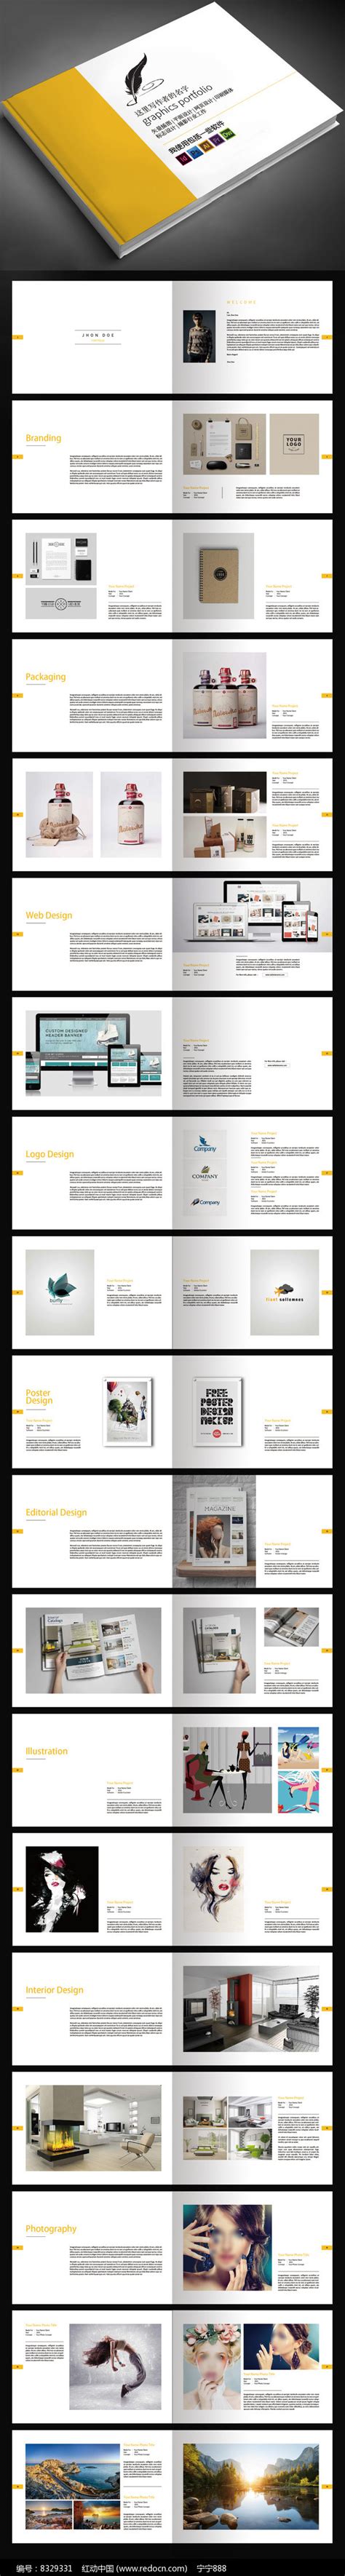 毕业设计作品集画册宣传册模板图片下载_红动中国